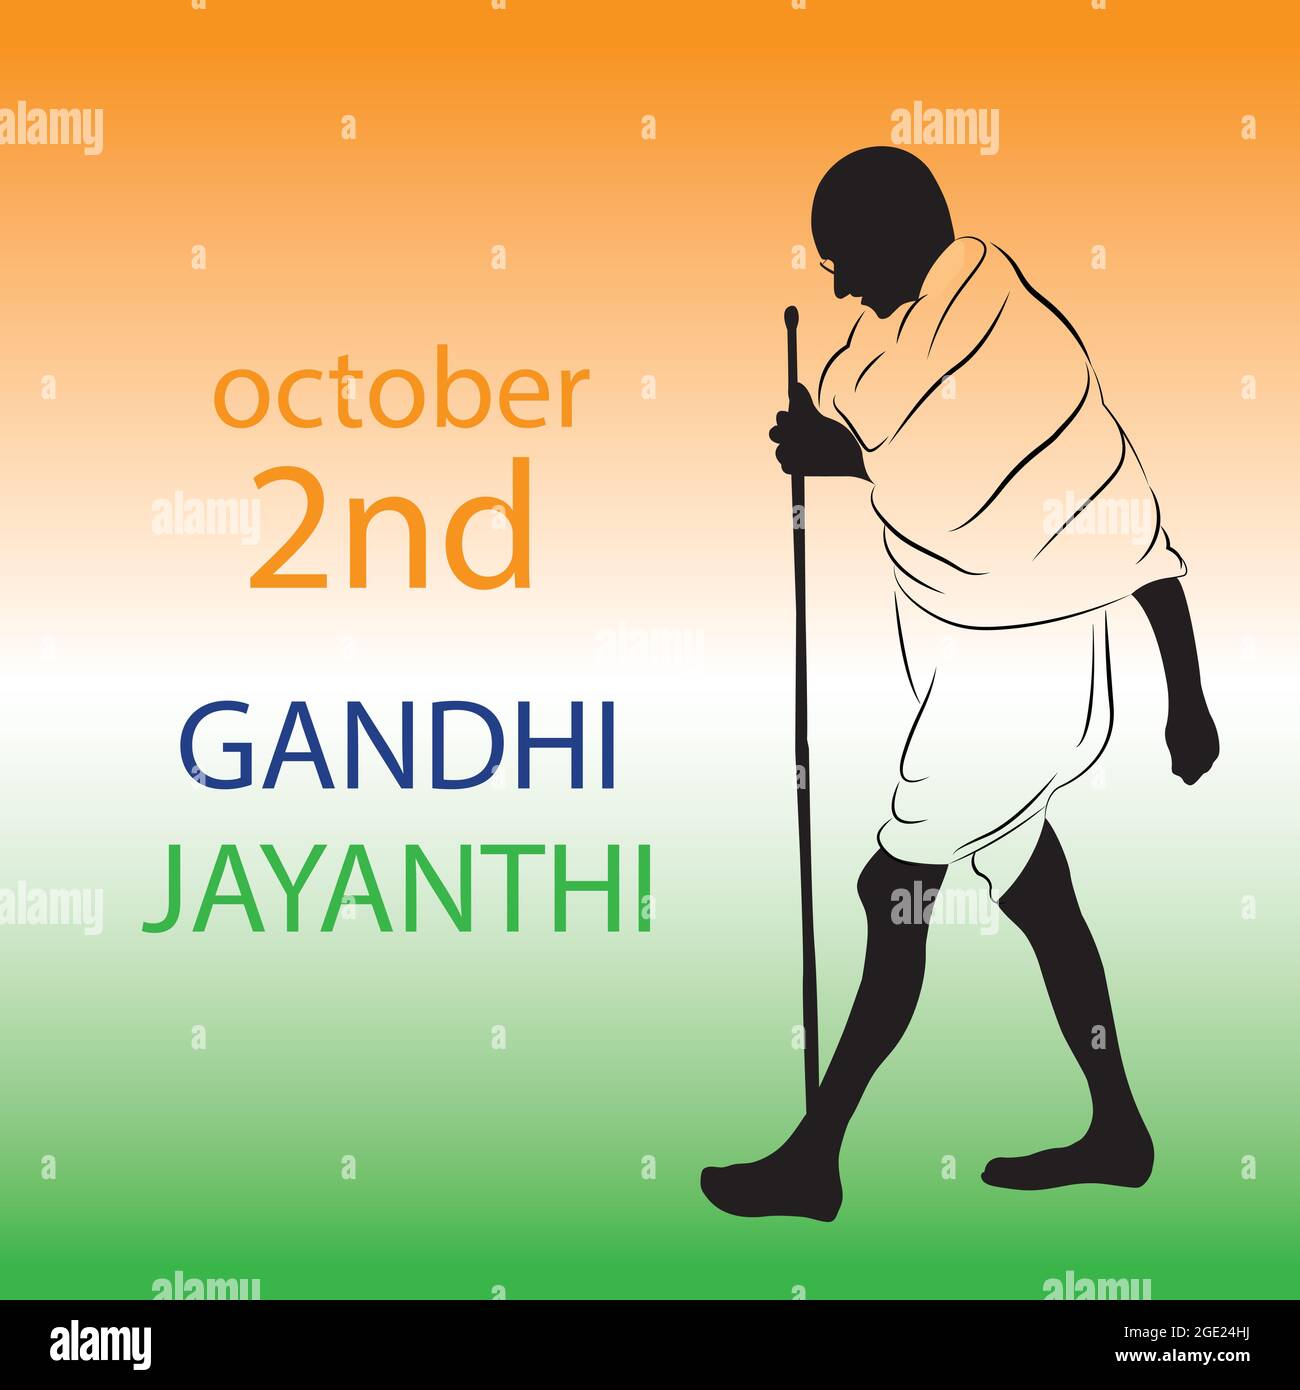 Gandhi Jayanti ist ein Nationalfeiertag in Indien. Mahatma gandhi, großer indischer Freiheitskämpfer. Oktober 2 Stock Vektor